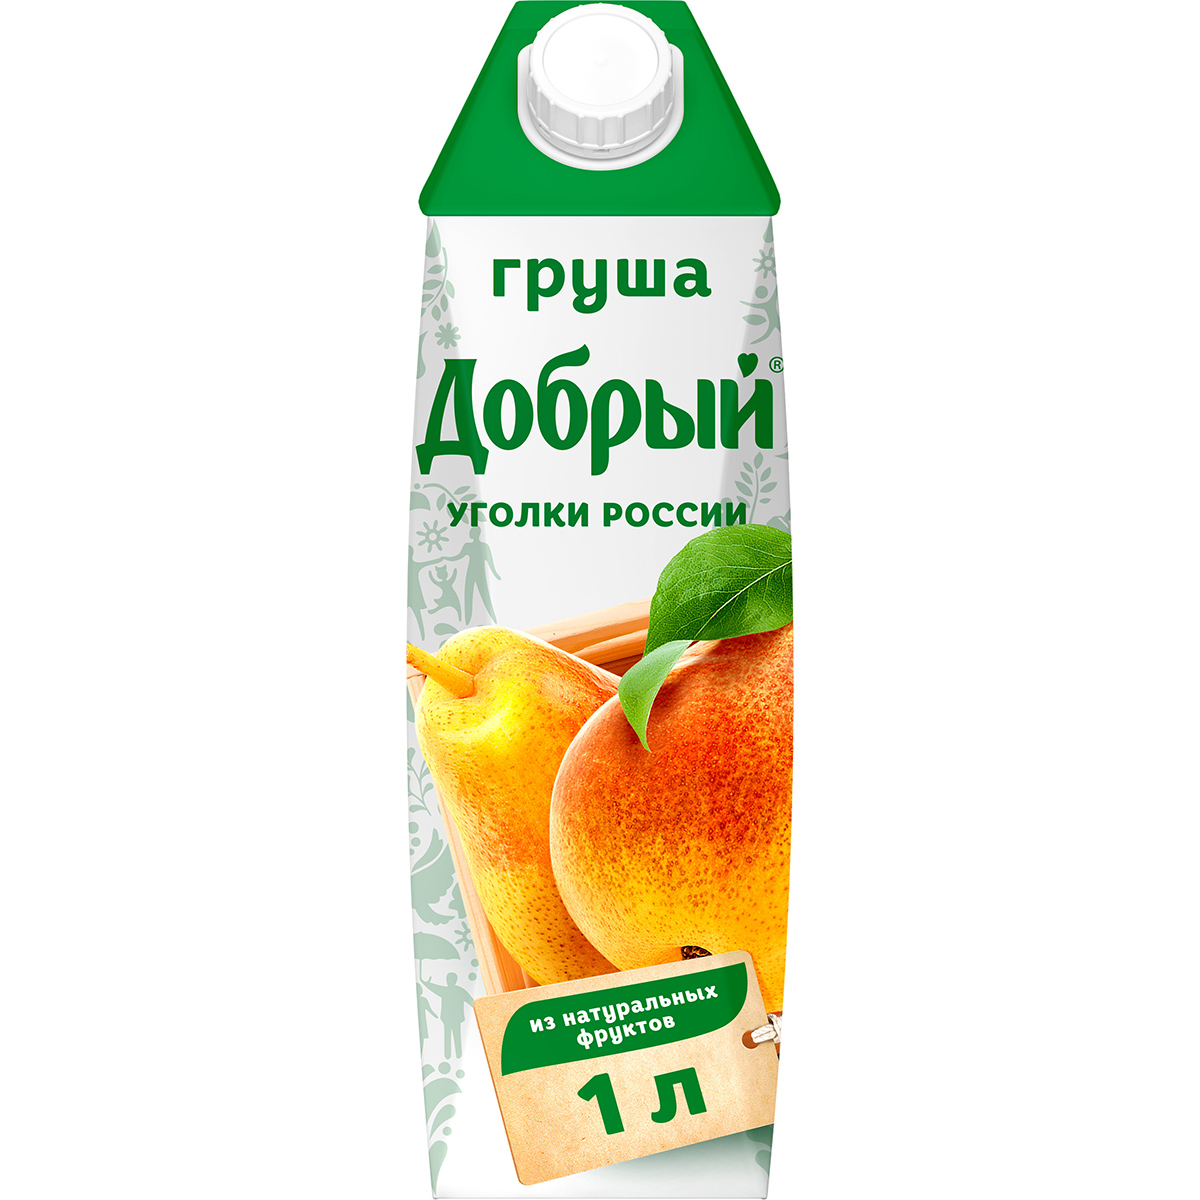 Нектар Добрый Уголки России Груша 1 л нектар добрый ананас 1 литр